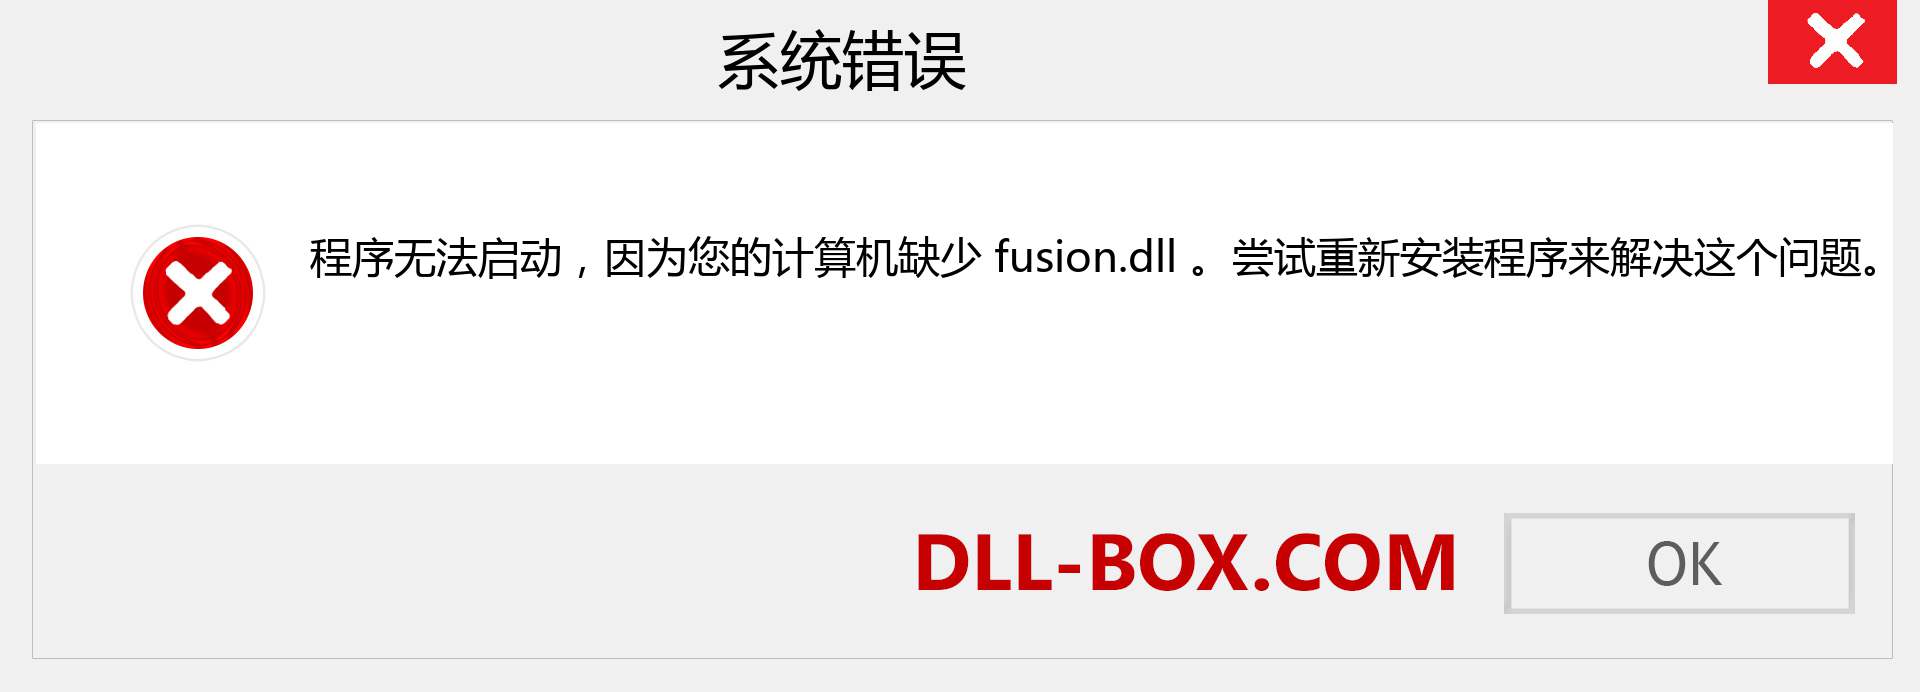 fusion.dll 文件丢失？。 适用于 Windows 7、8、10 的下载 - 修复 Windows、照片、图像上的 fusion dll 丢失错误